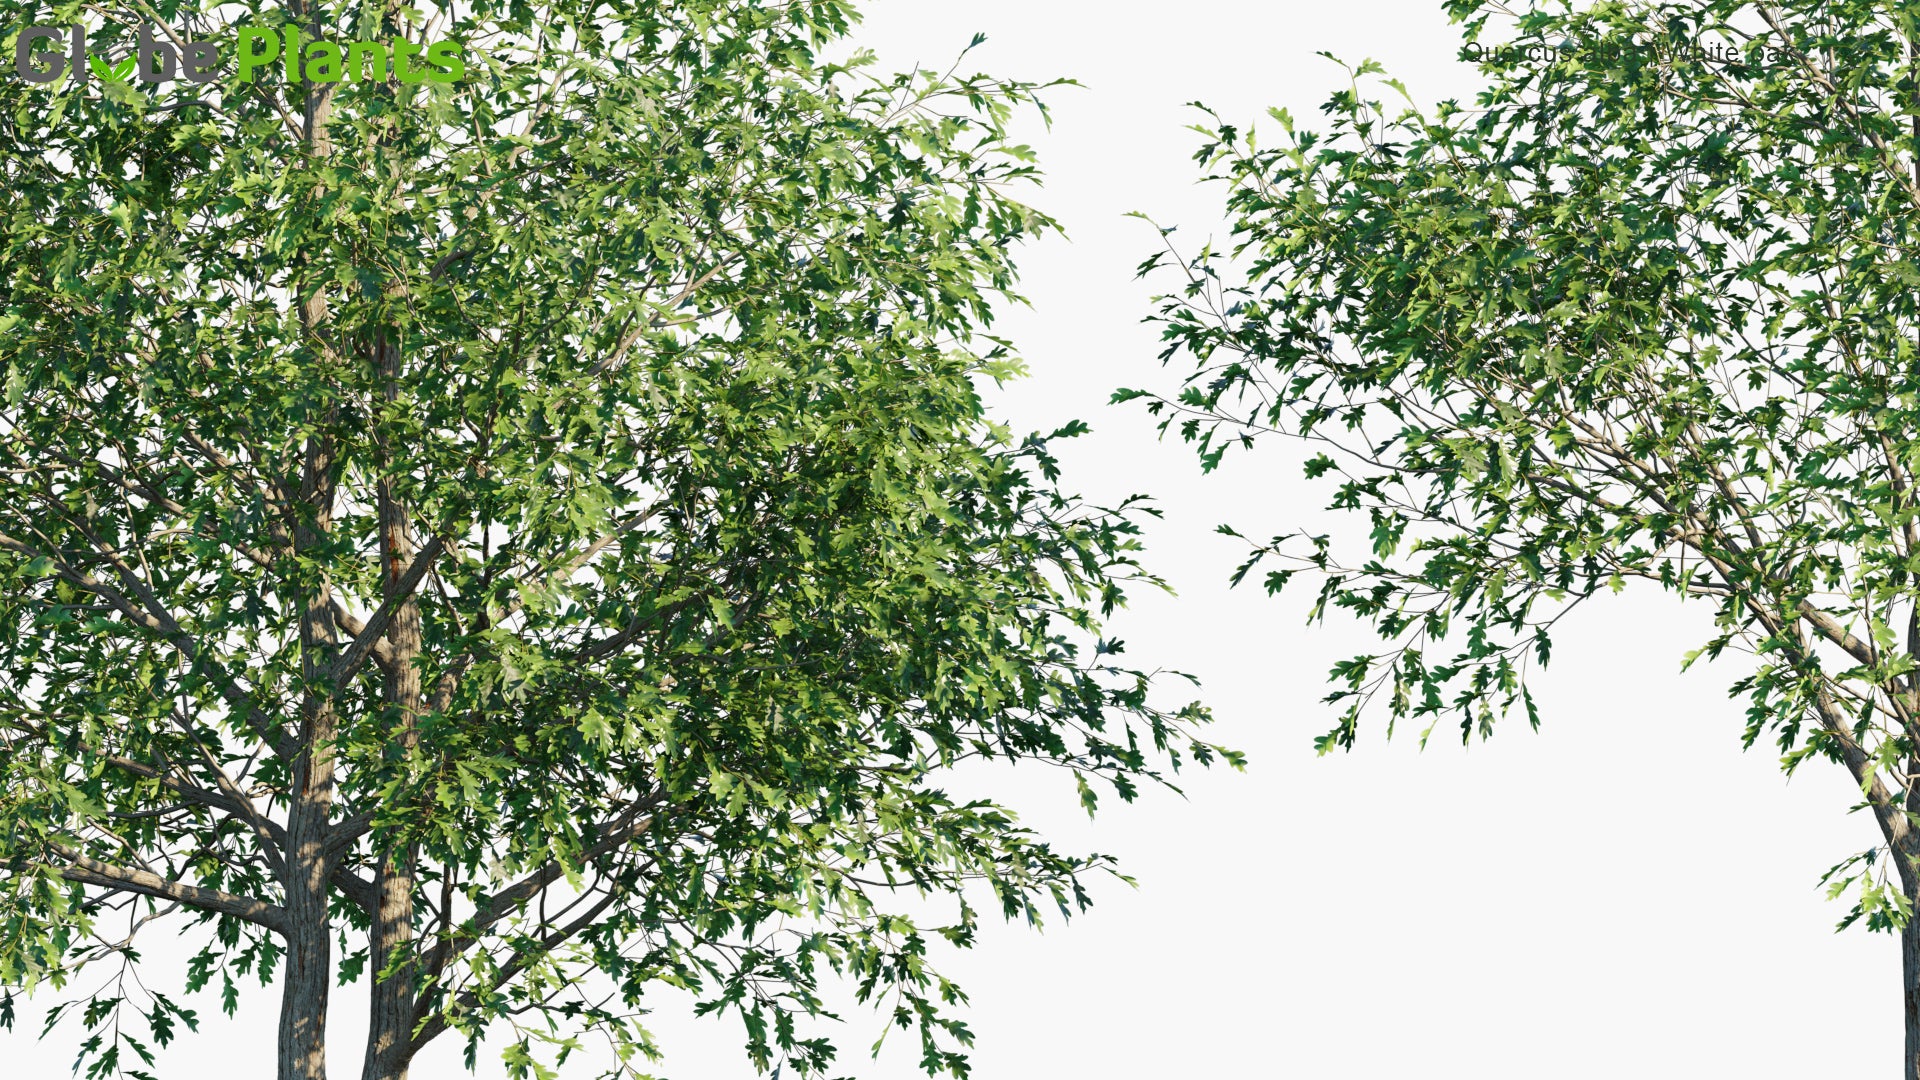 Low Poly Quercus Alba - White Oak (3D Model)